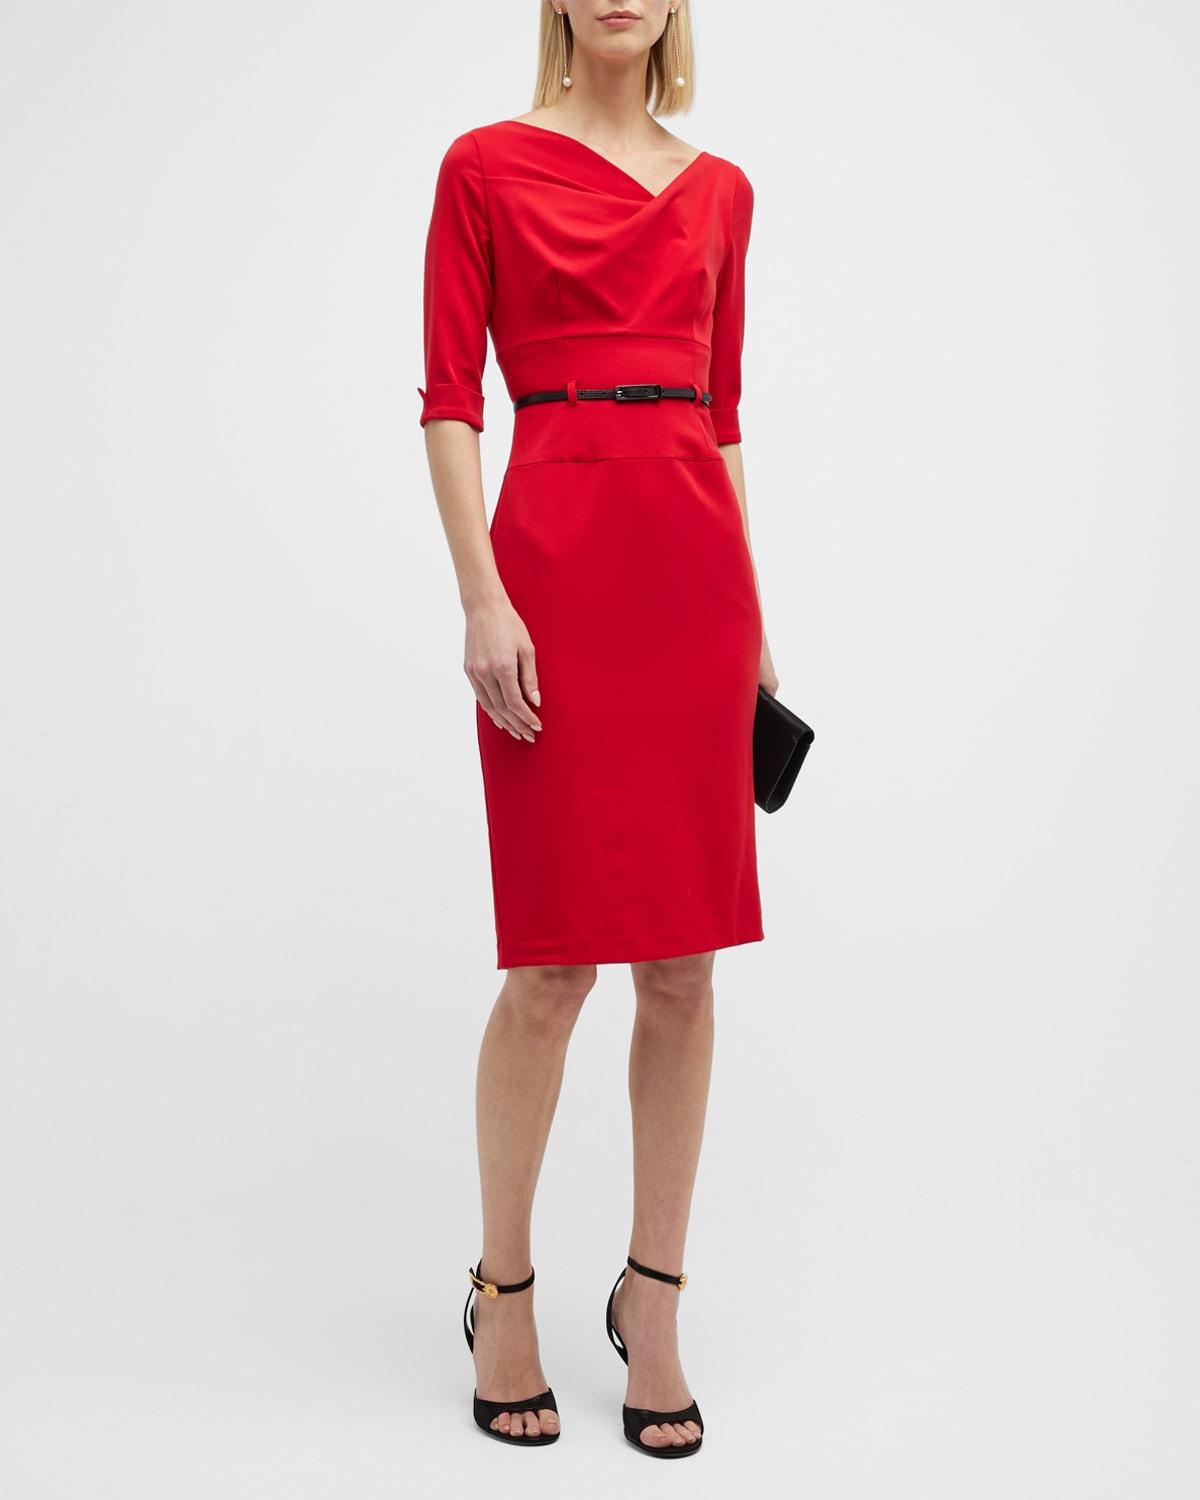 Fashion Dresses Wraparounds Michael Kors Wraparound red allover print elegant 